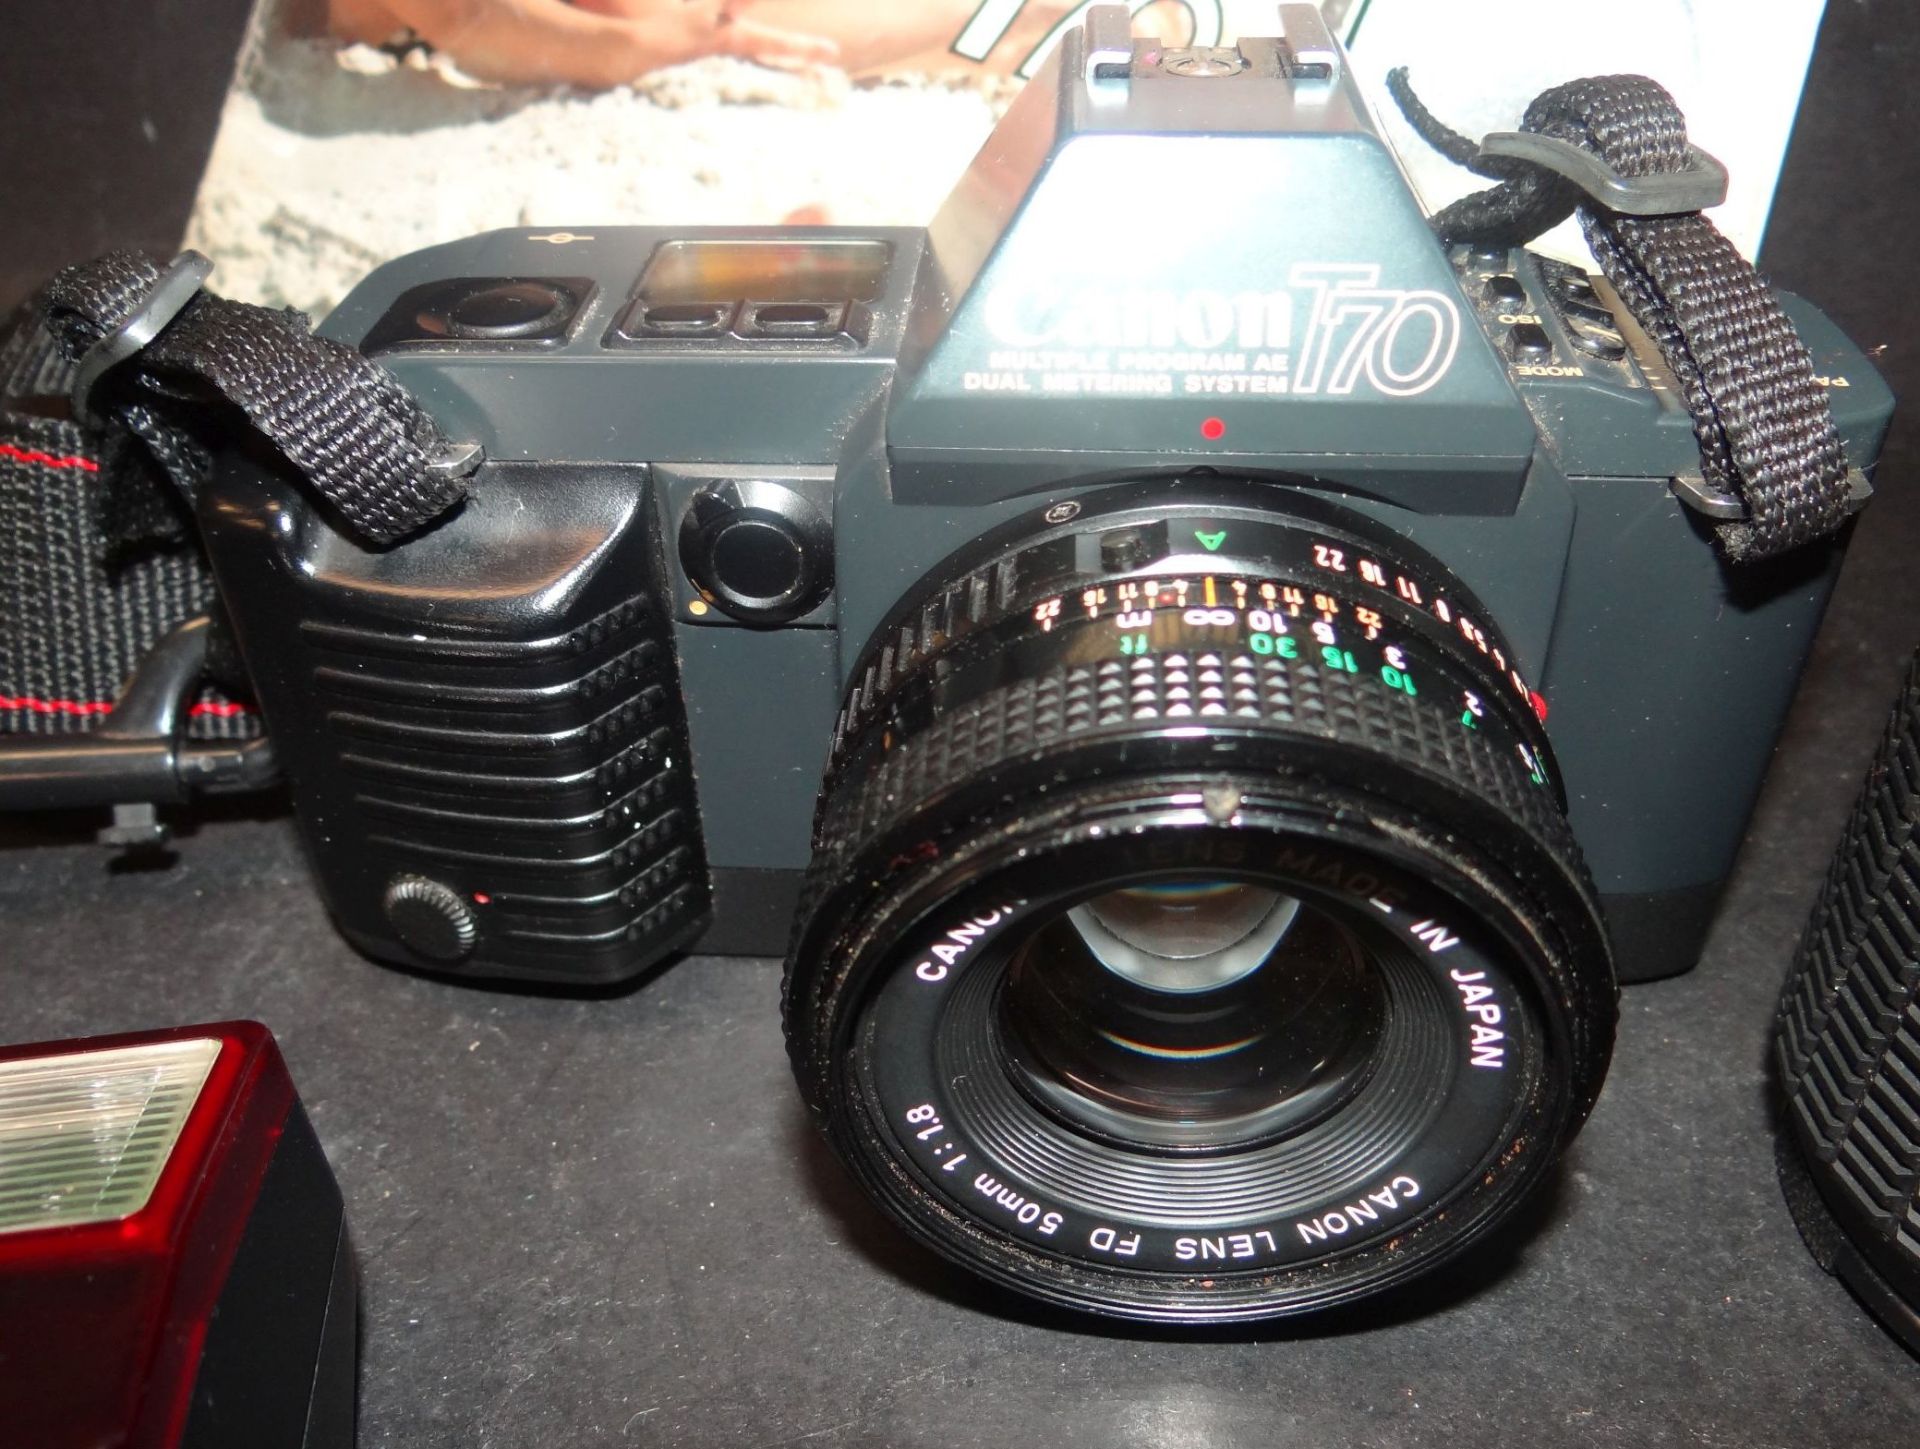 Spiegelreflex "Canon T70" mit Zubehör in Tasche, mit Beschreibung, Tele und anderes Objektiv, Blitz, - Bild 2 aus 5